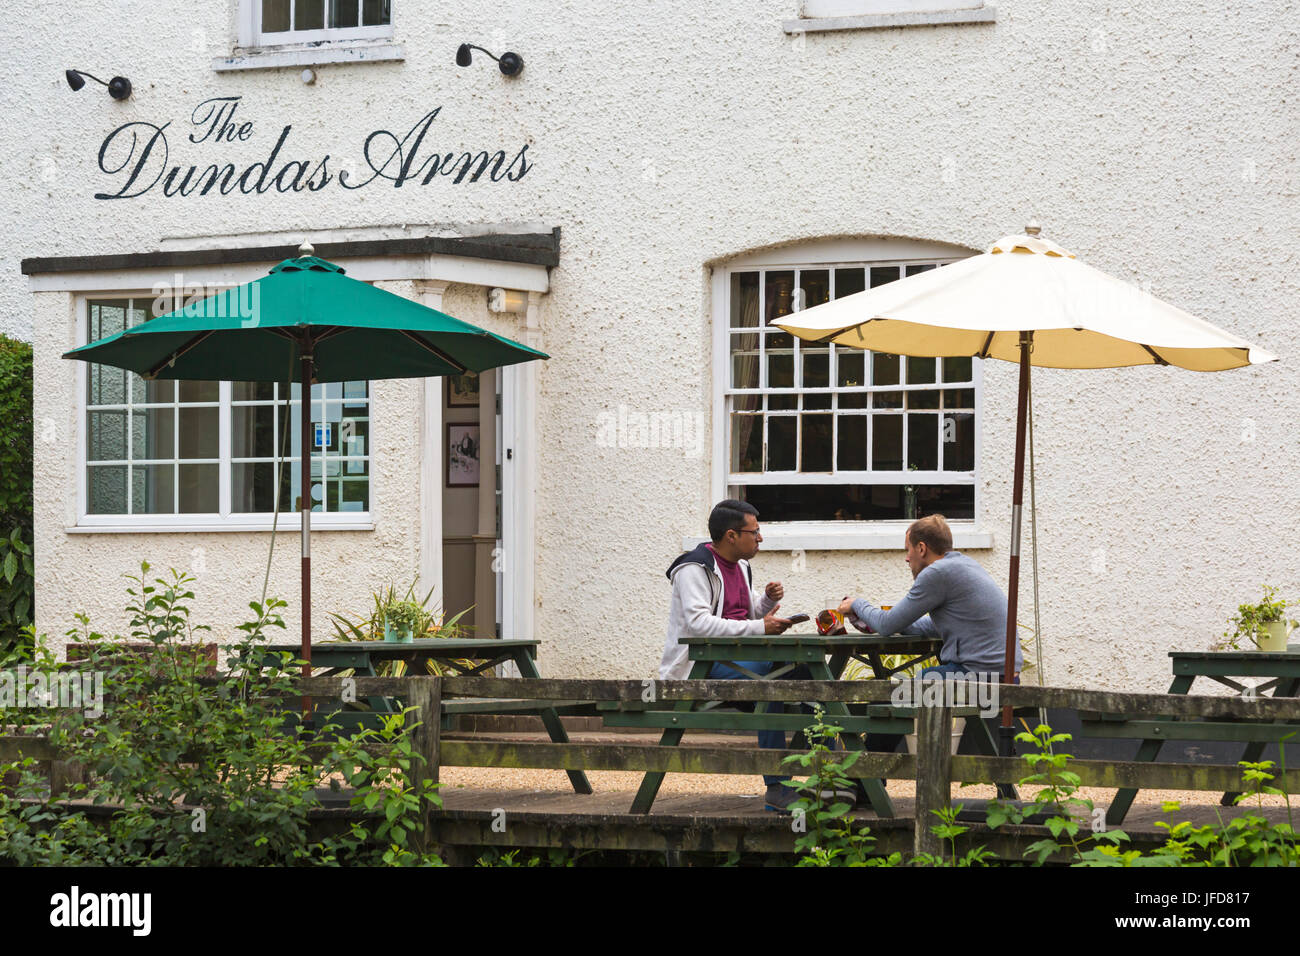 Zwei junge Männer, die im Juni vor dem Dundas Arms Pub in Kintbury, West Berkshire, Großbritannien, etwas zu essen und zu trinken haben Stockfoto